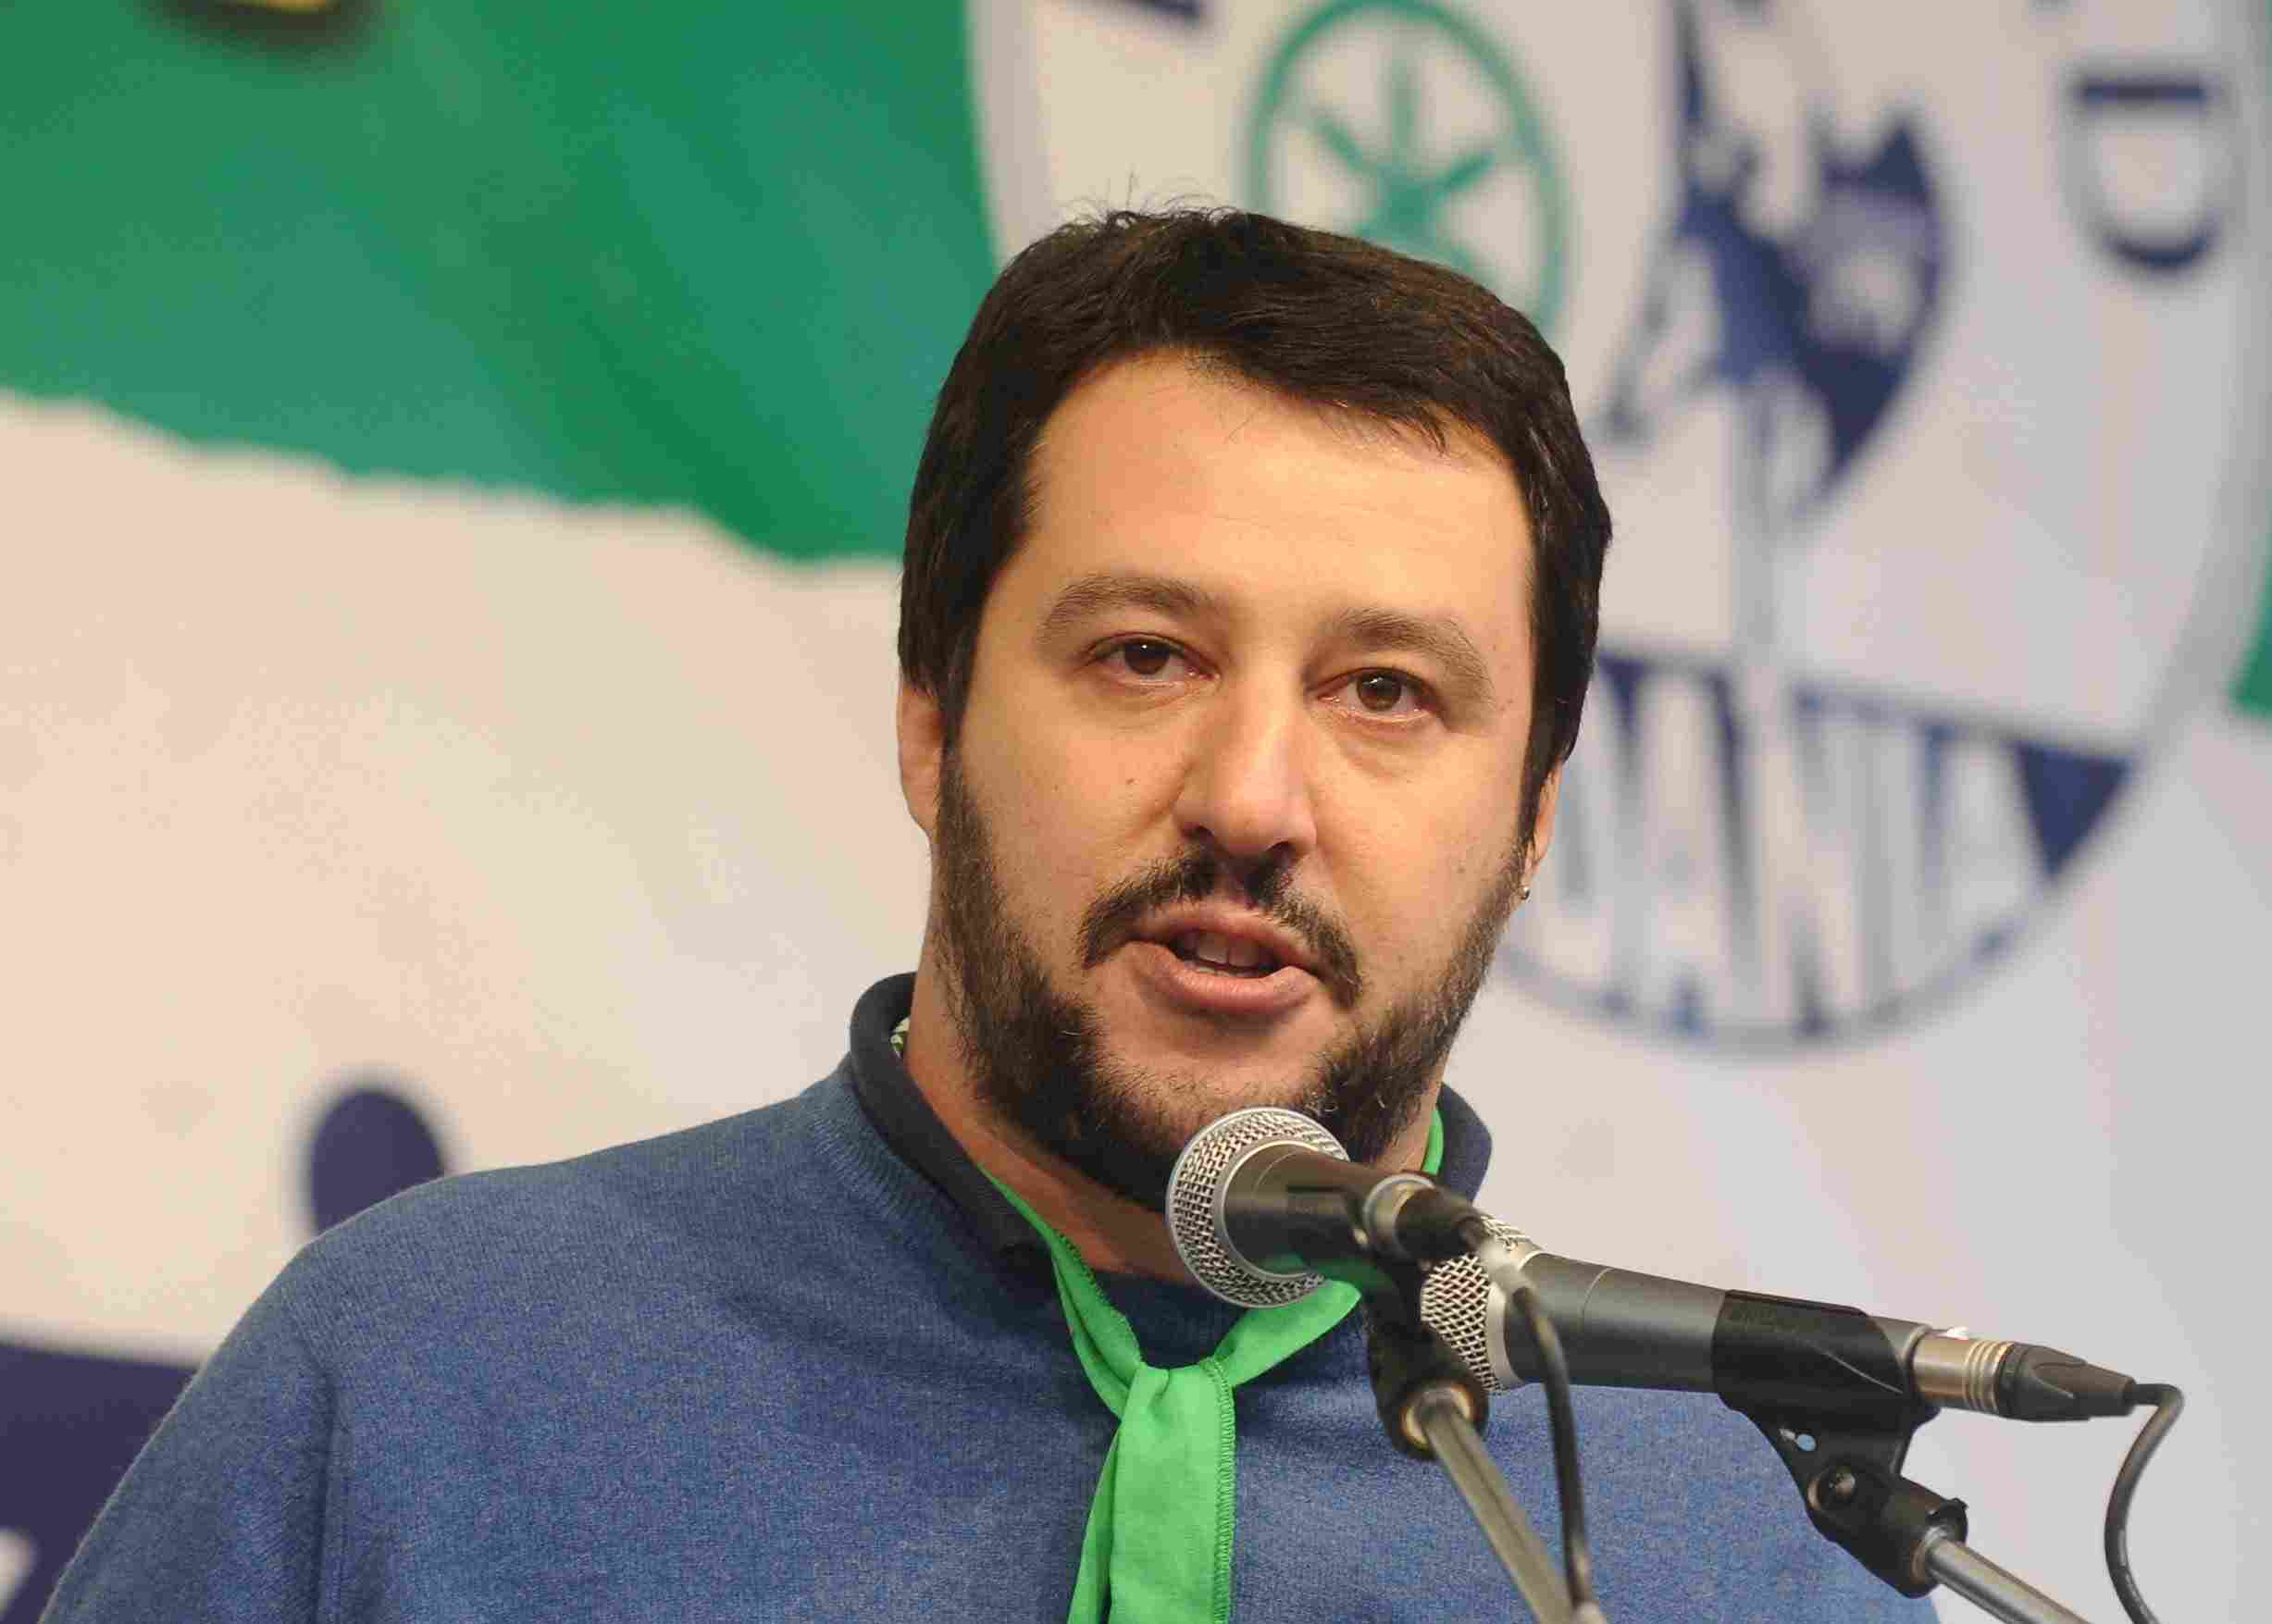 Debito pubblico, Salvini: Unica soluzione e' rivoluzione fiscale